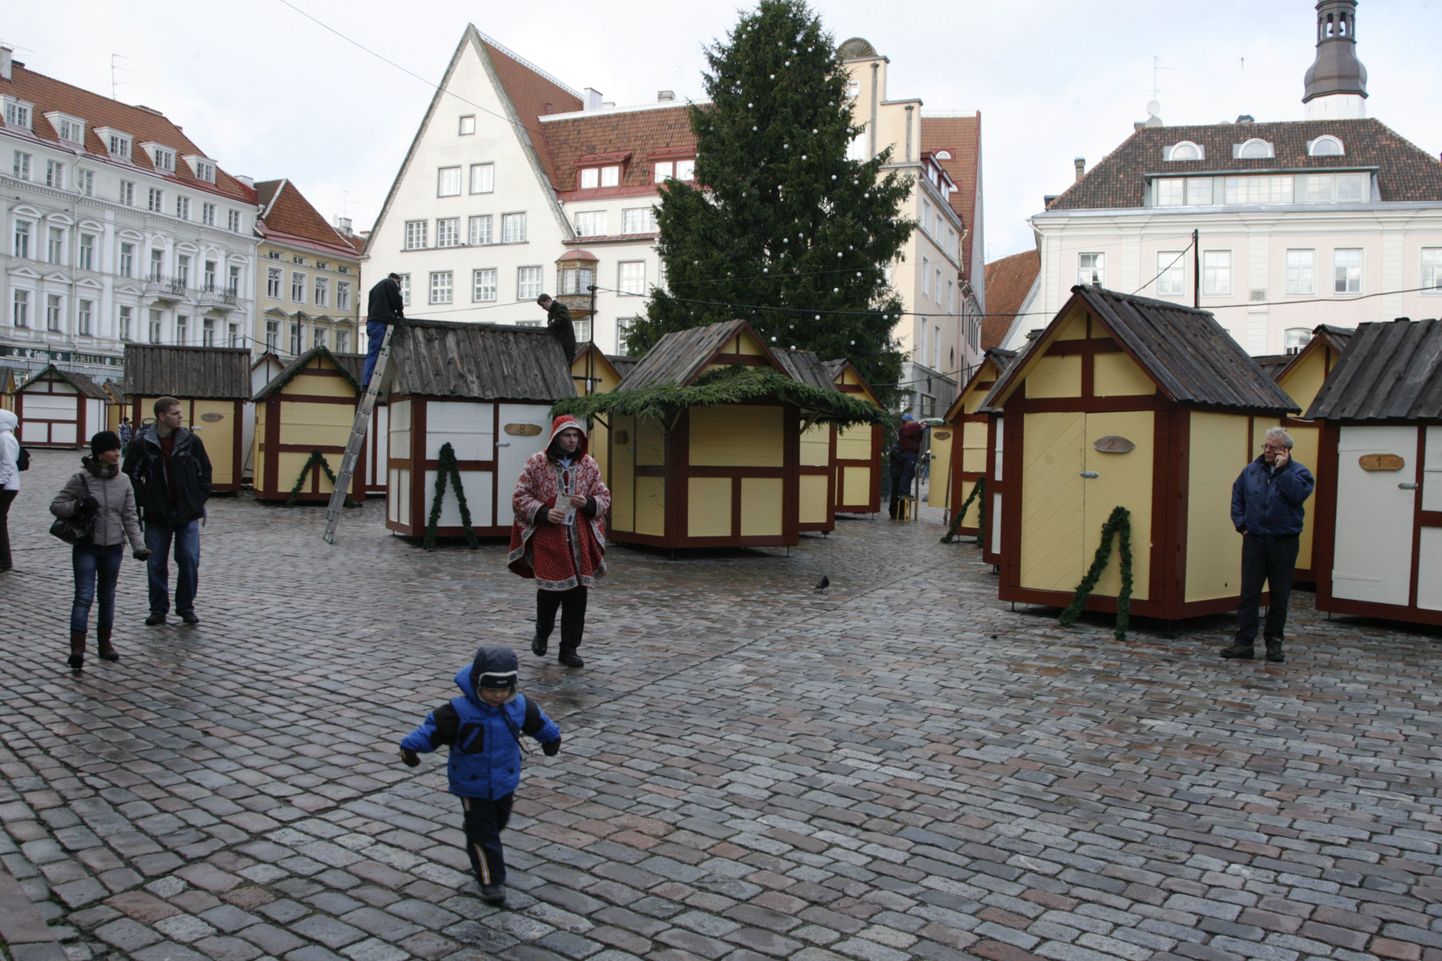 Täna oli jõuluturg Raekoja platsil rahvast veel üpris lage.